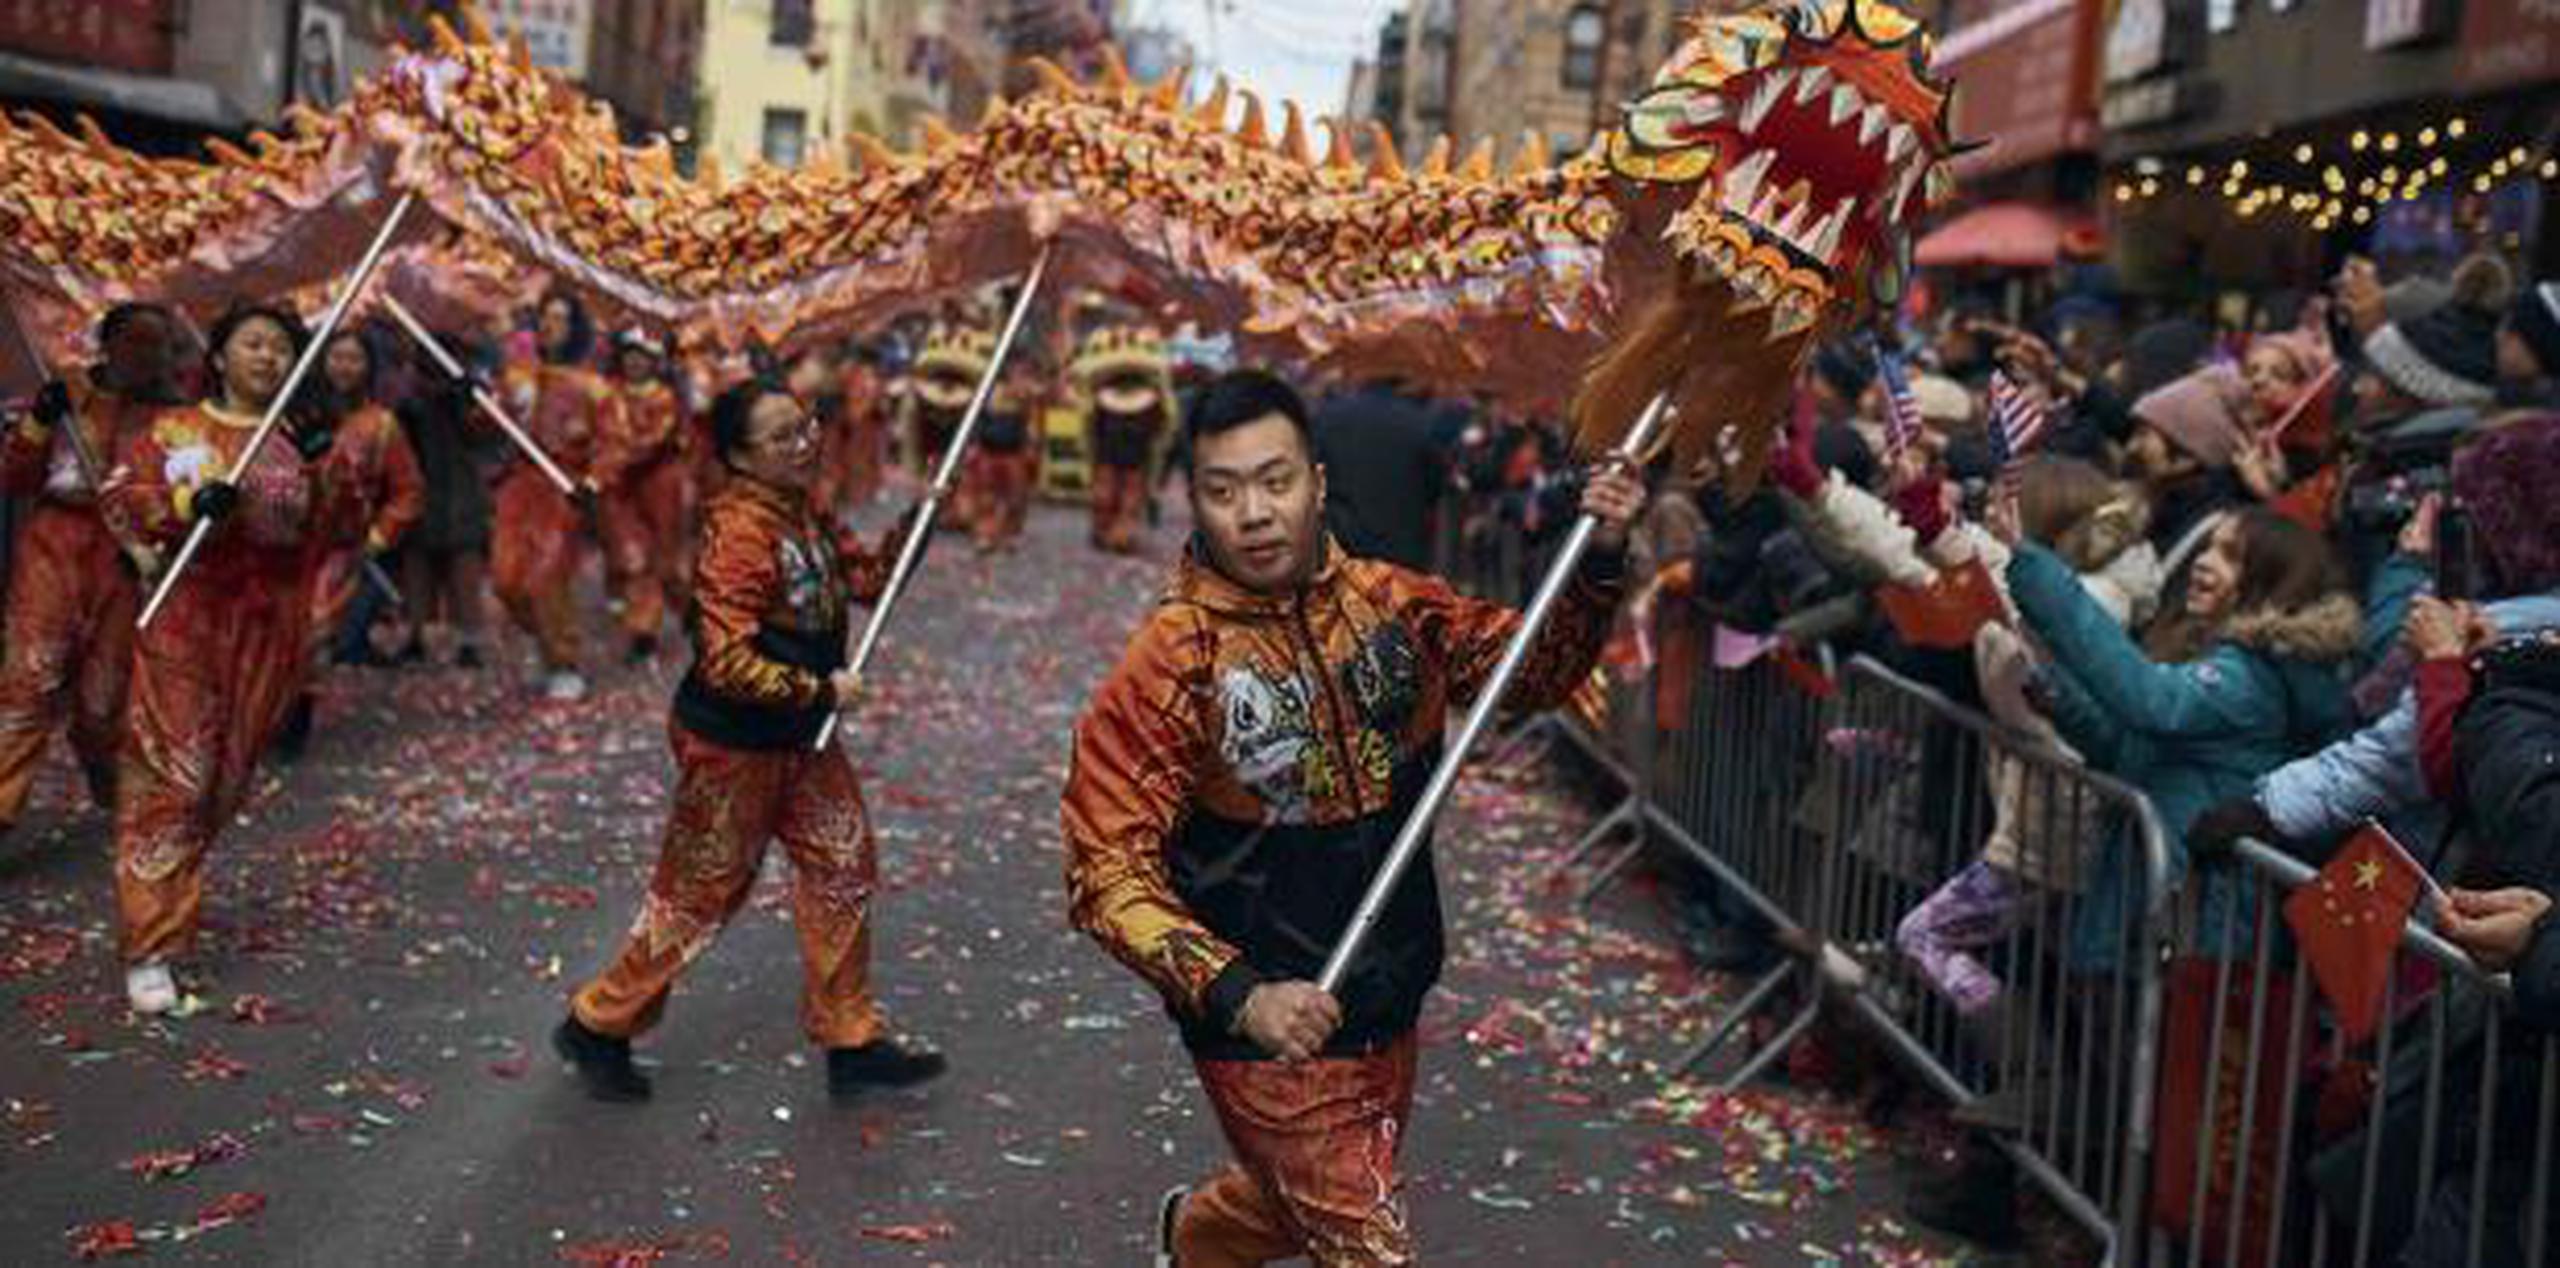 Toda una serie de celebraciones despiden la festividad más importante del año en China, todavía repleta de supersticiones y ritos religiosos pese a la creciente modernización del gigante asiático.  (AP)

